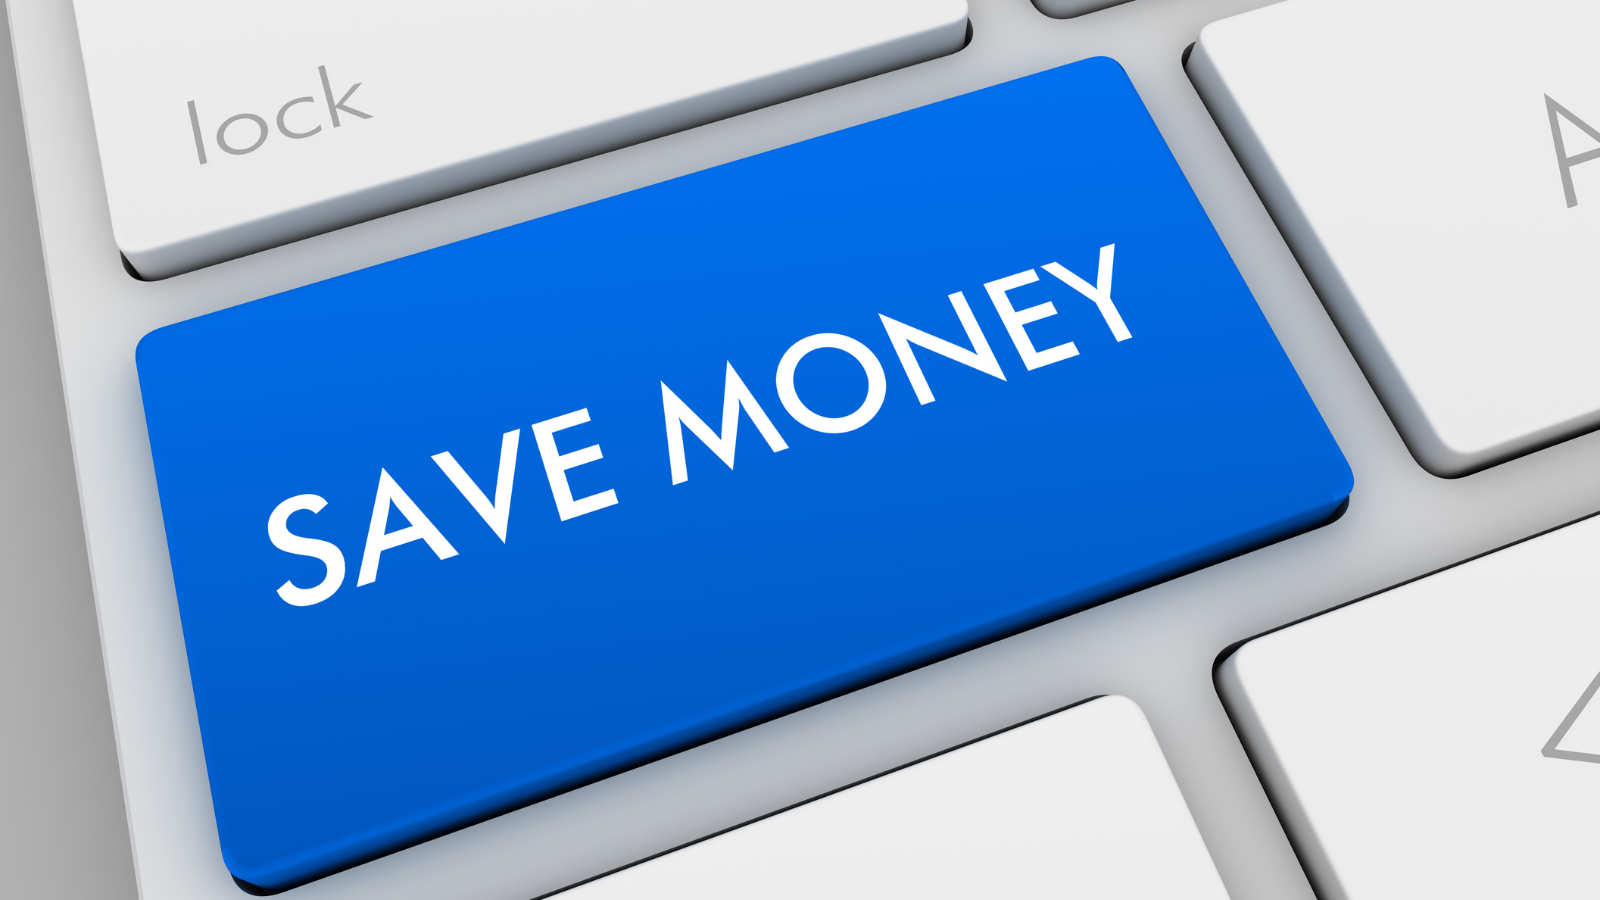 Organiza tus finanzas. Aprende más sobre el simulador de ahorro CDAT.